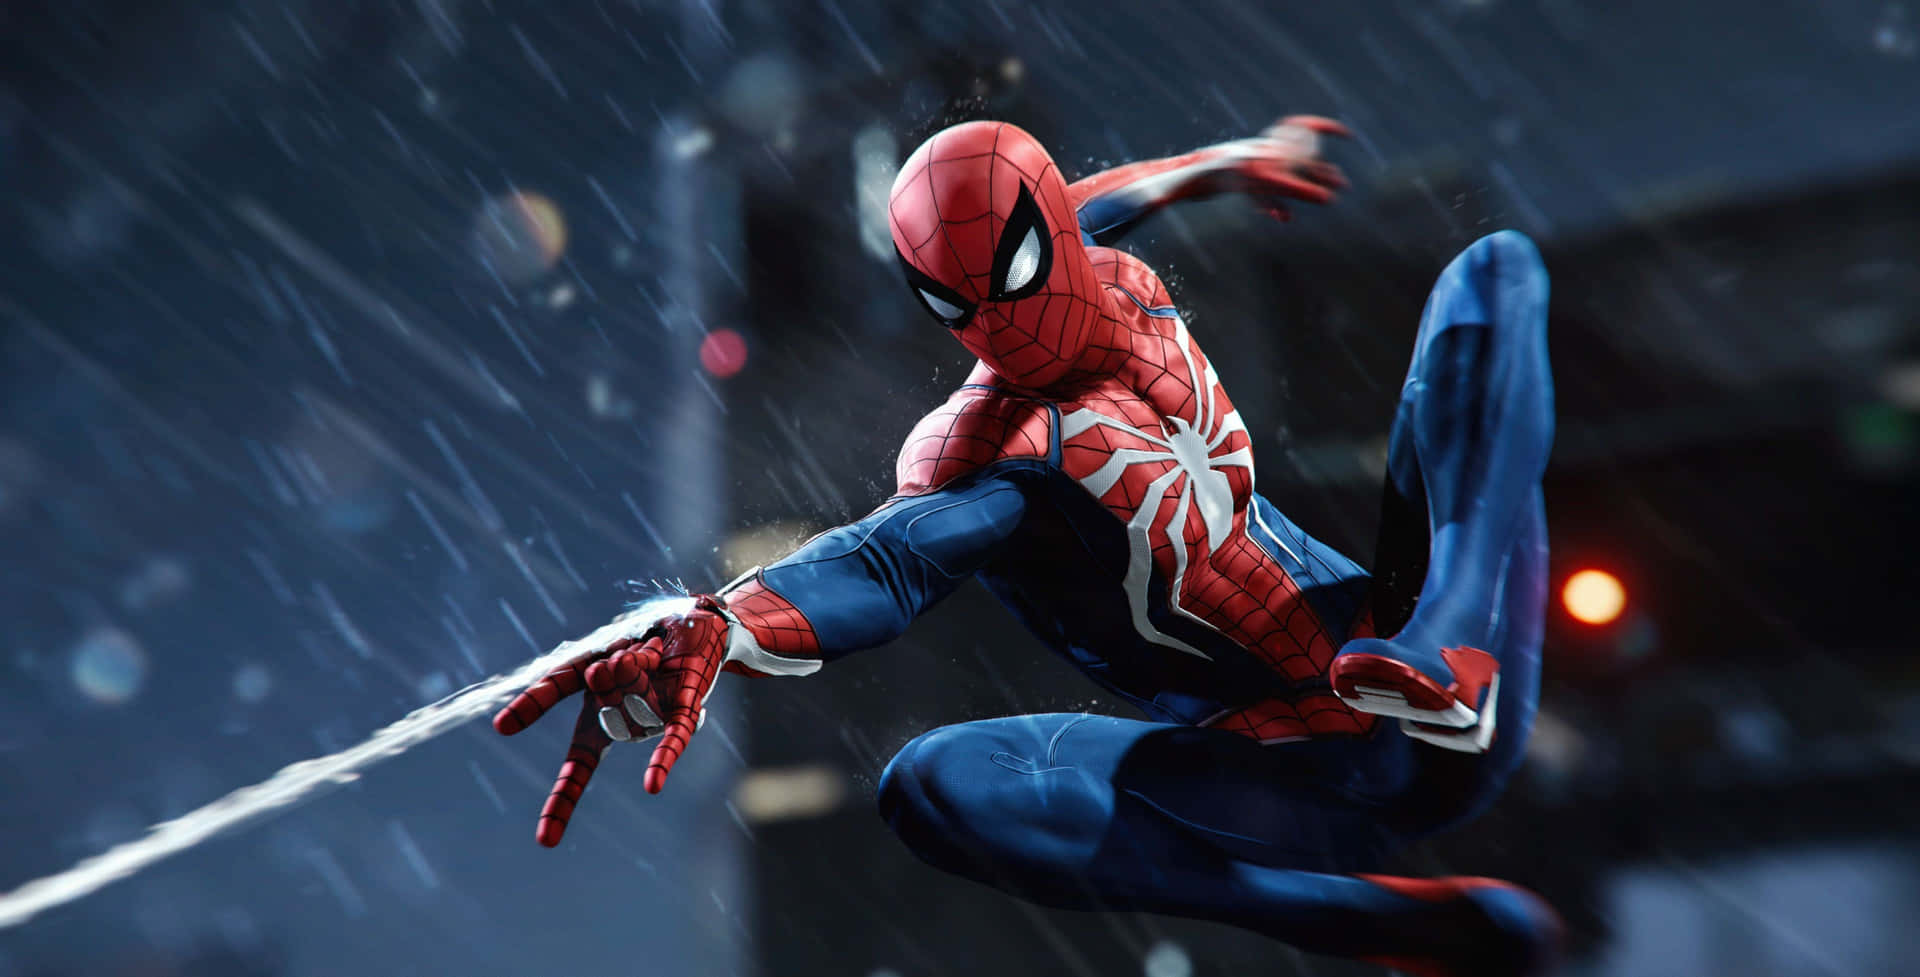 Action Marvel Spider-man Wallpaper